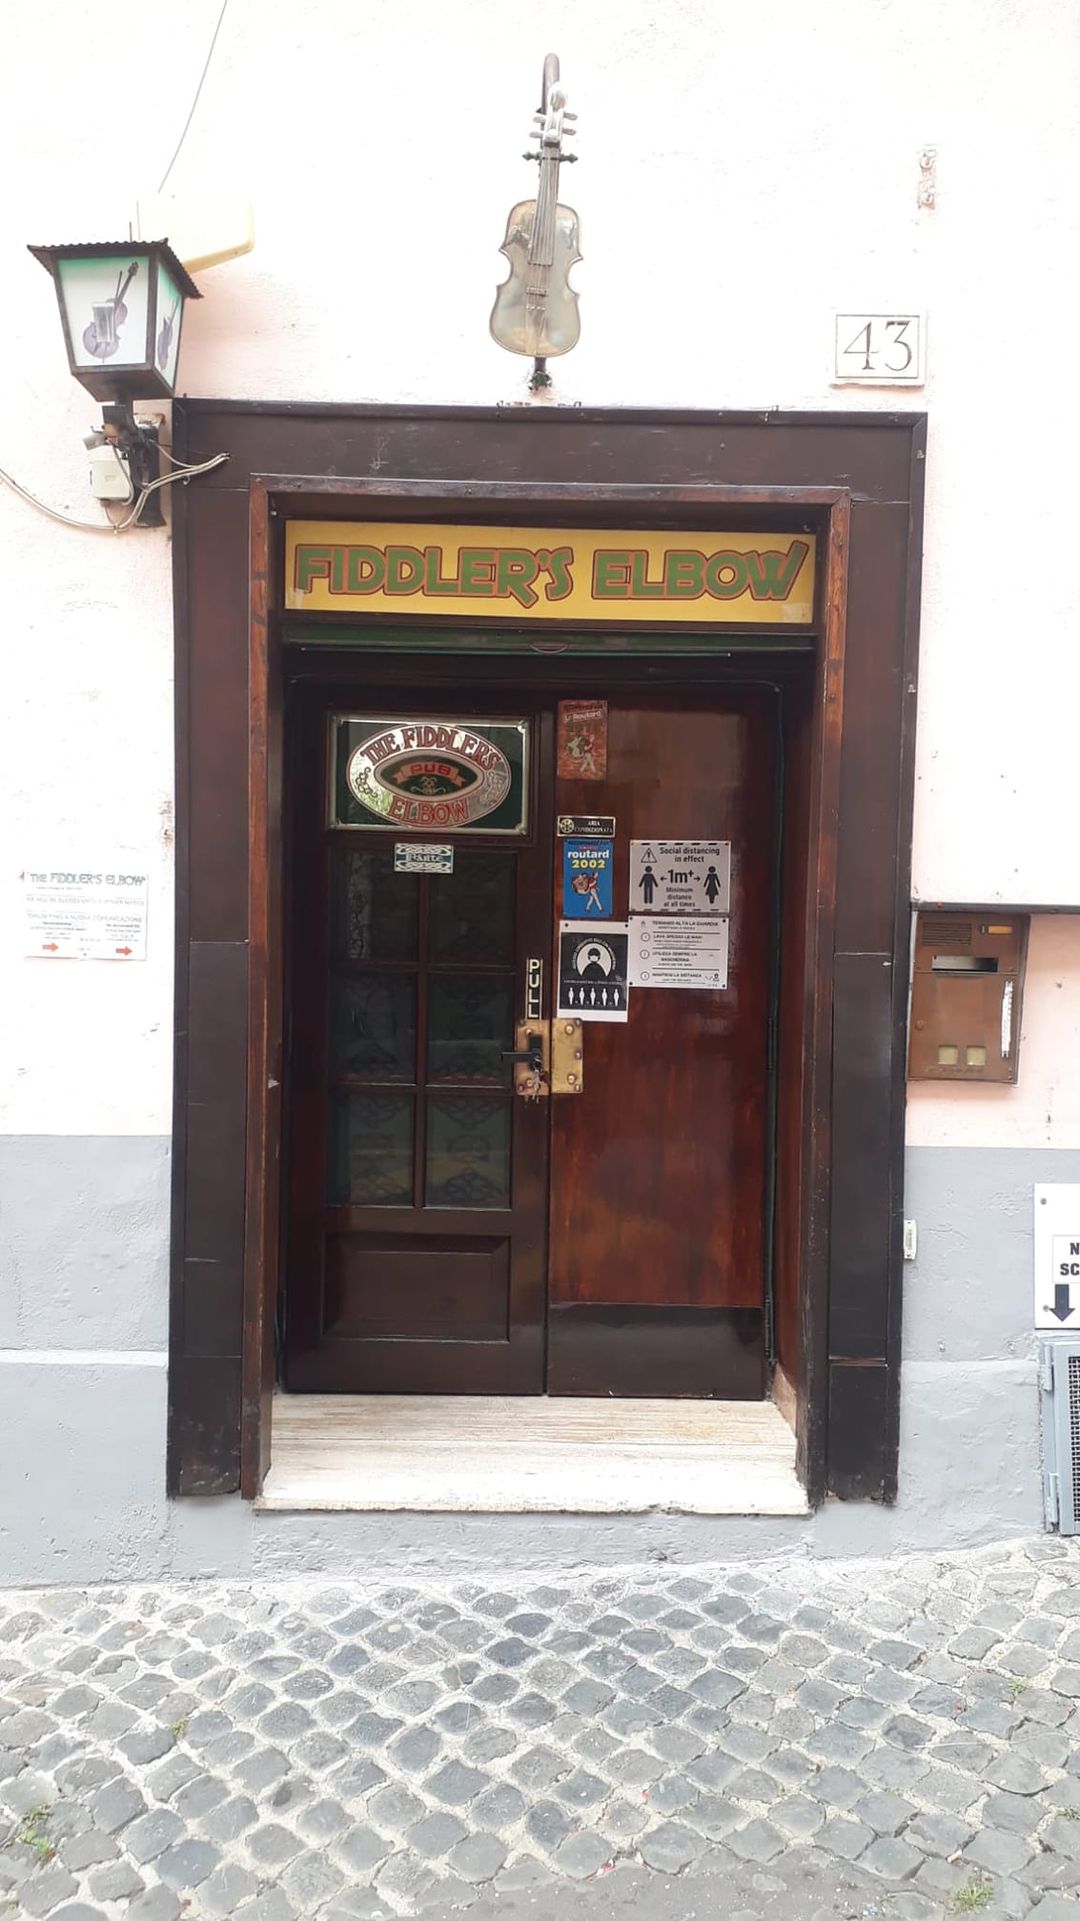 fiddler's Elbow primo irish pub roma